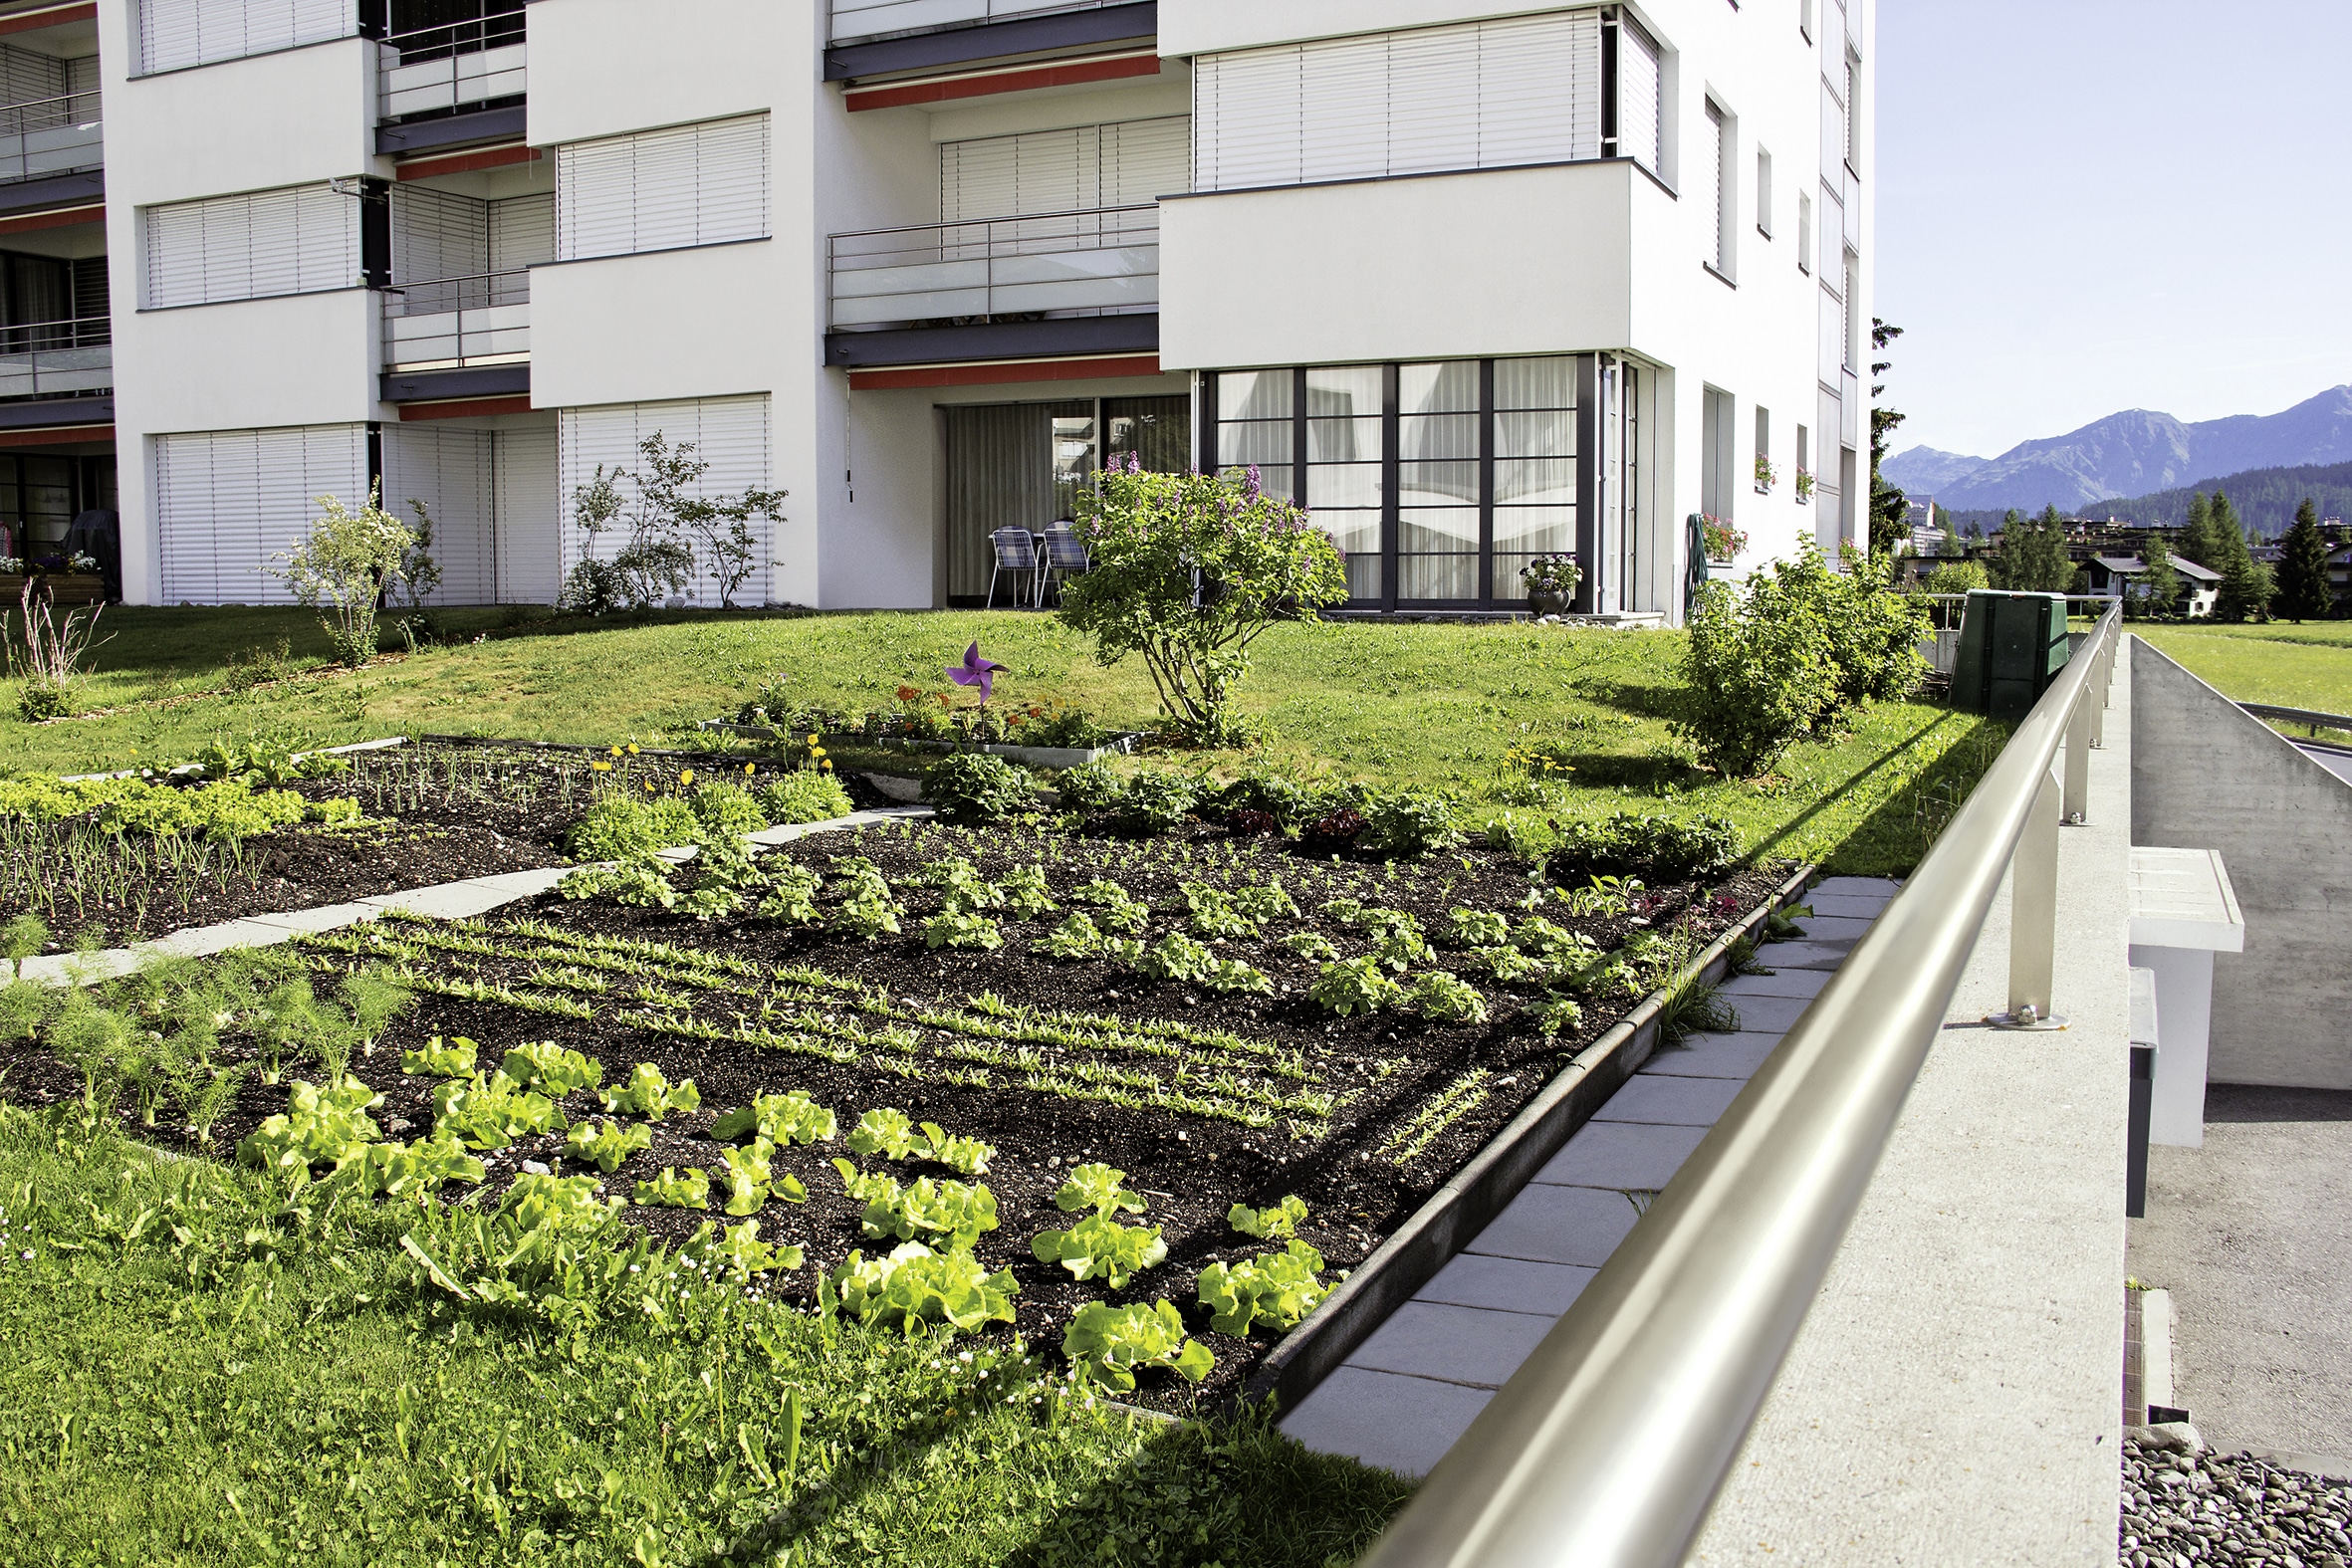 Dachterrasse mit Extensivbegrünung von ZinCo und der Möglichkeit zu urban farming.